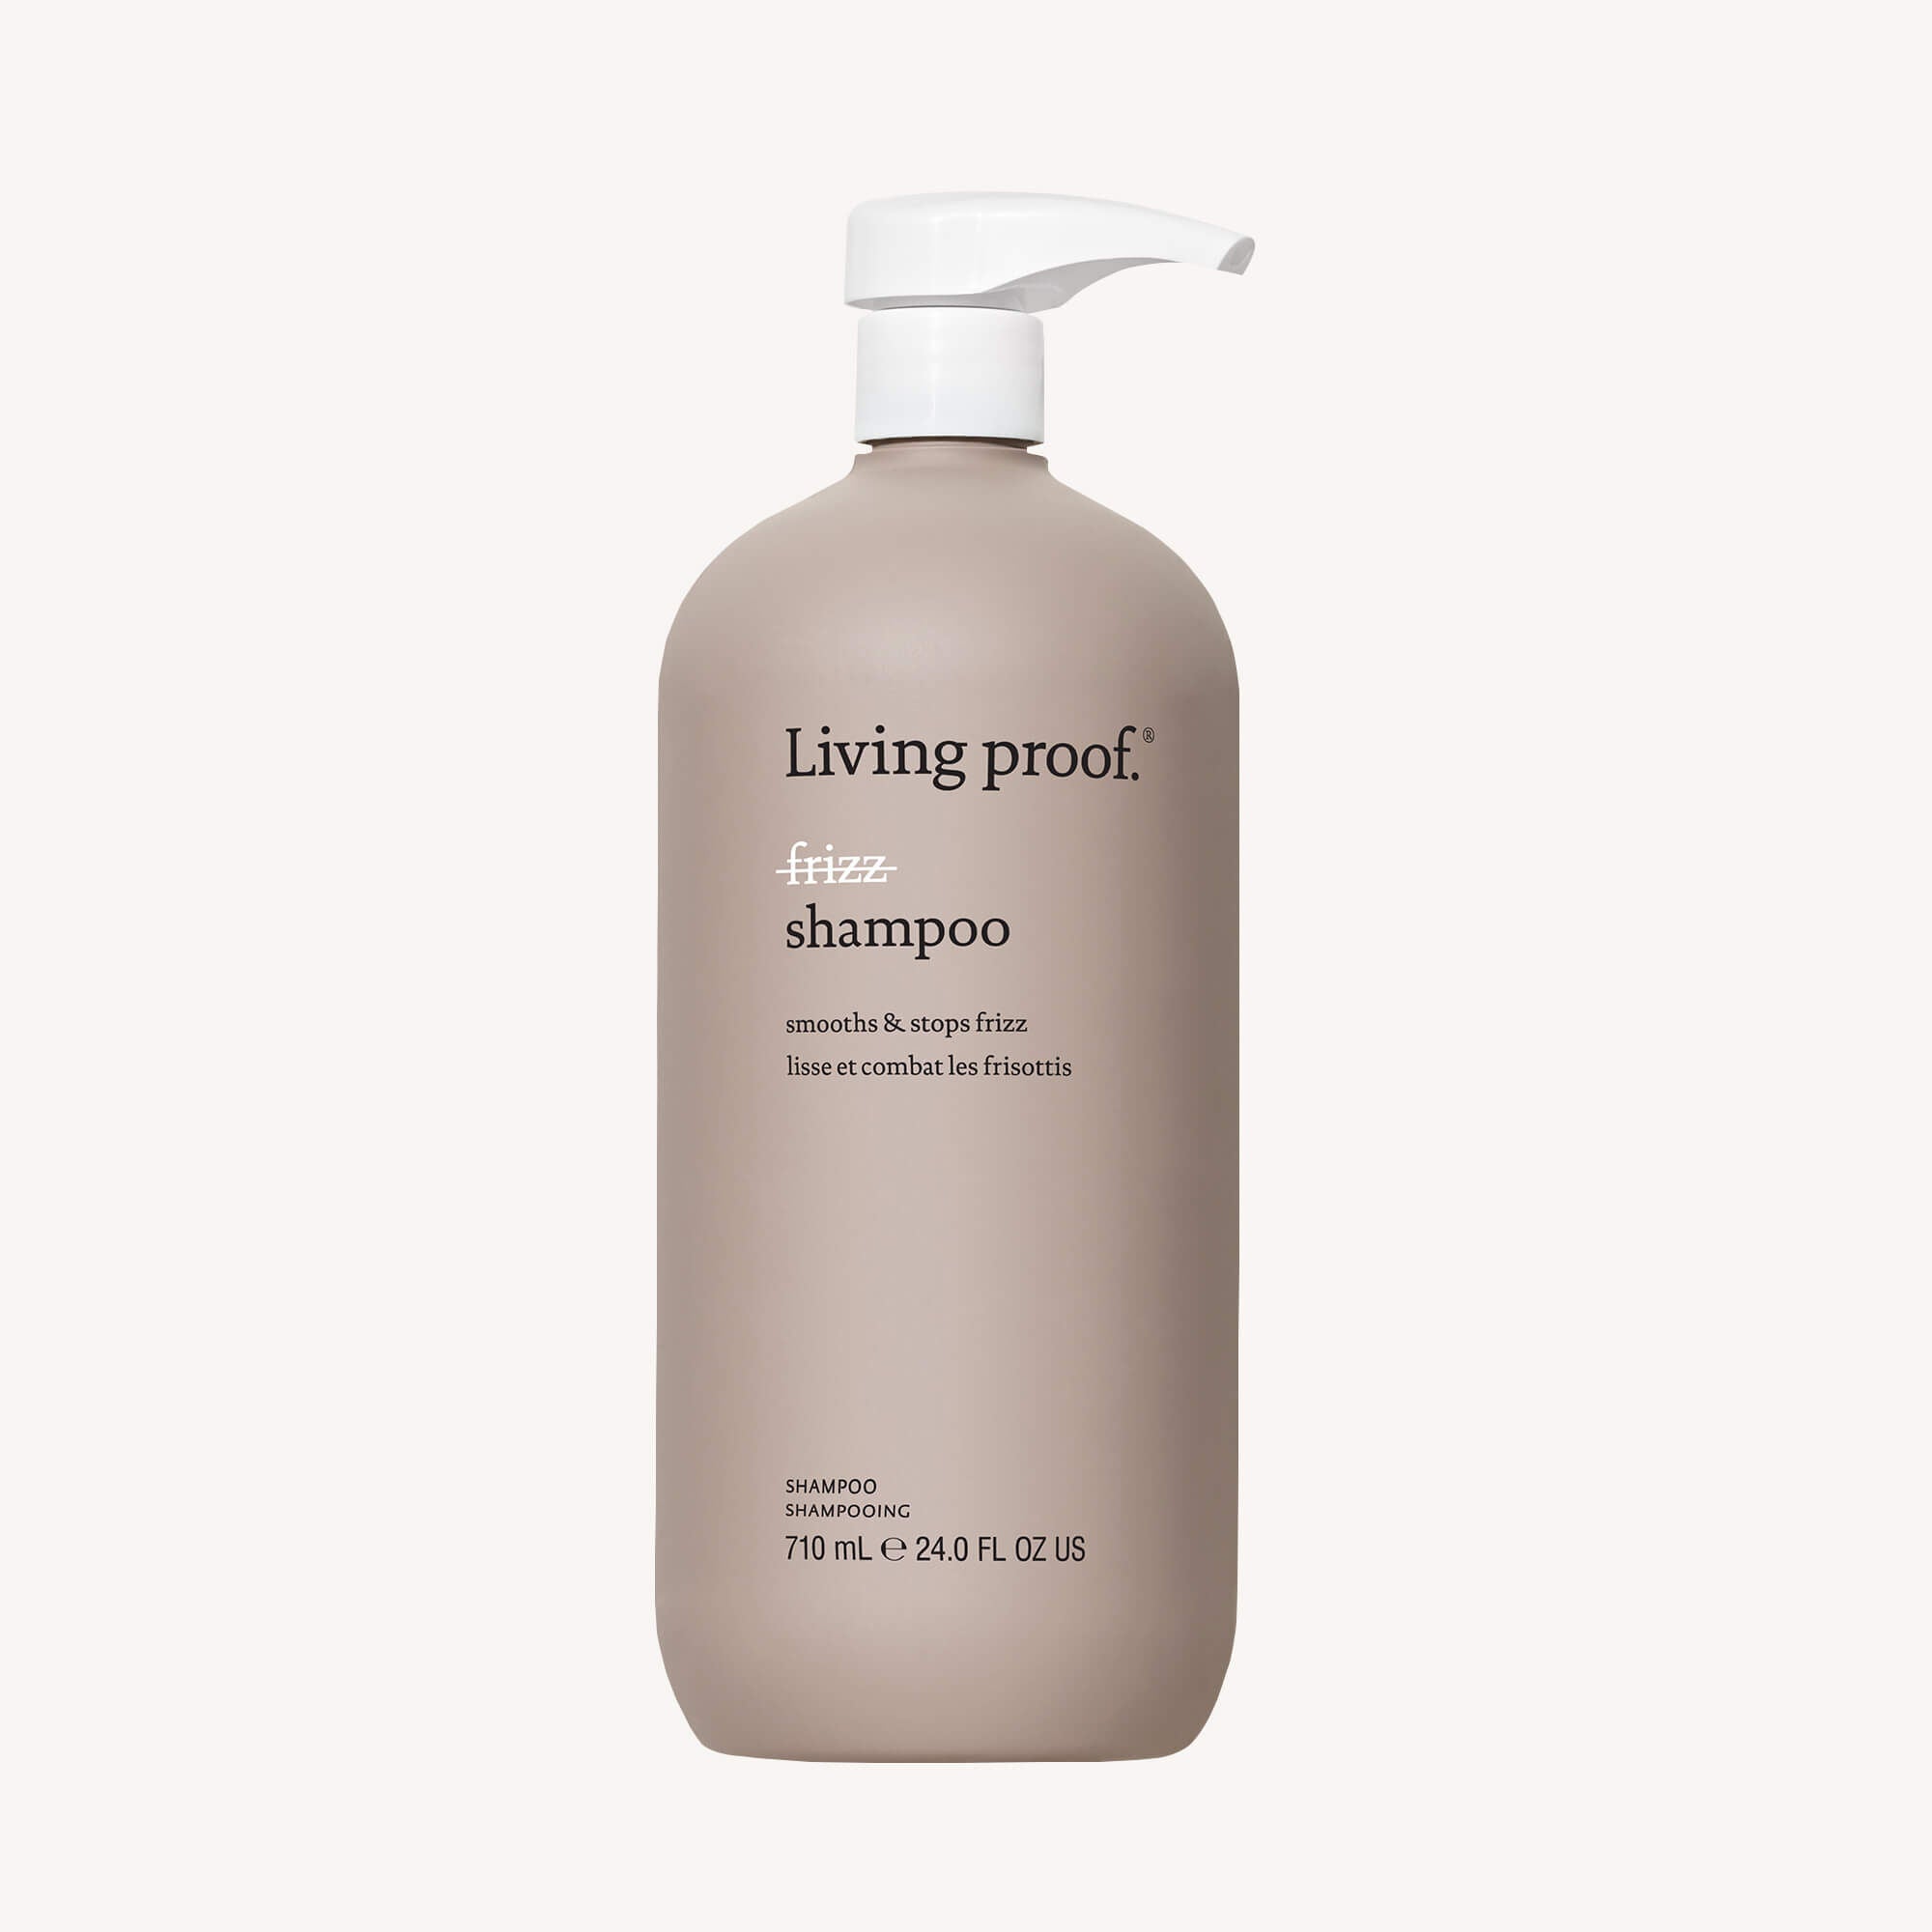 Living Proof No Frizz Shampoo and Conditioner Duo - 24oz / 24 oz